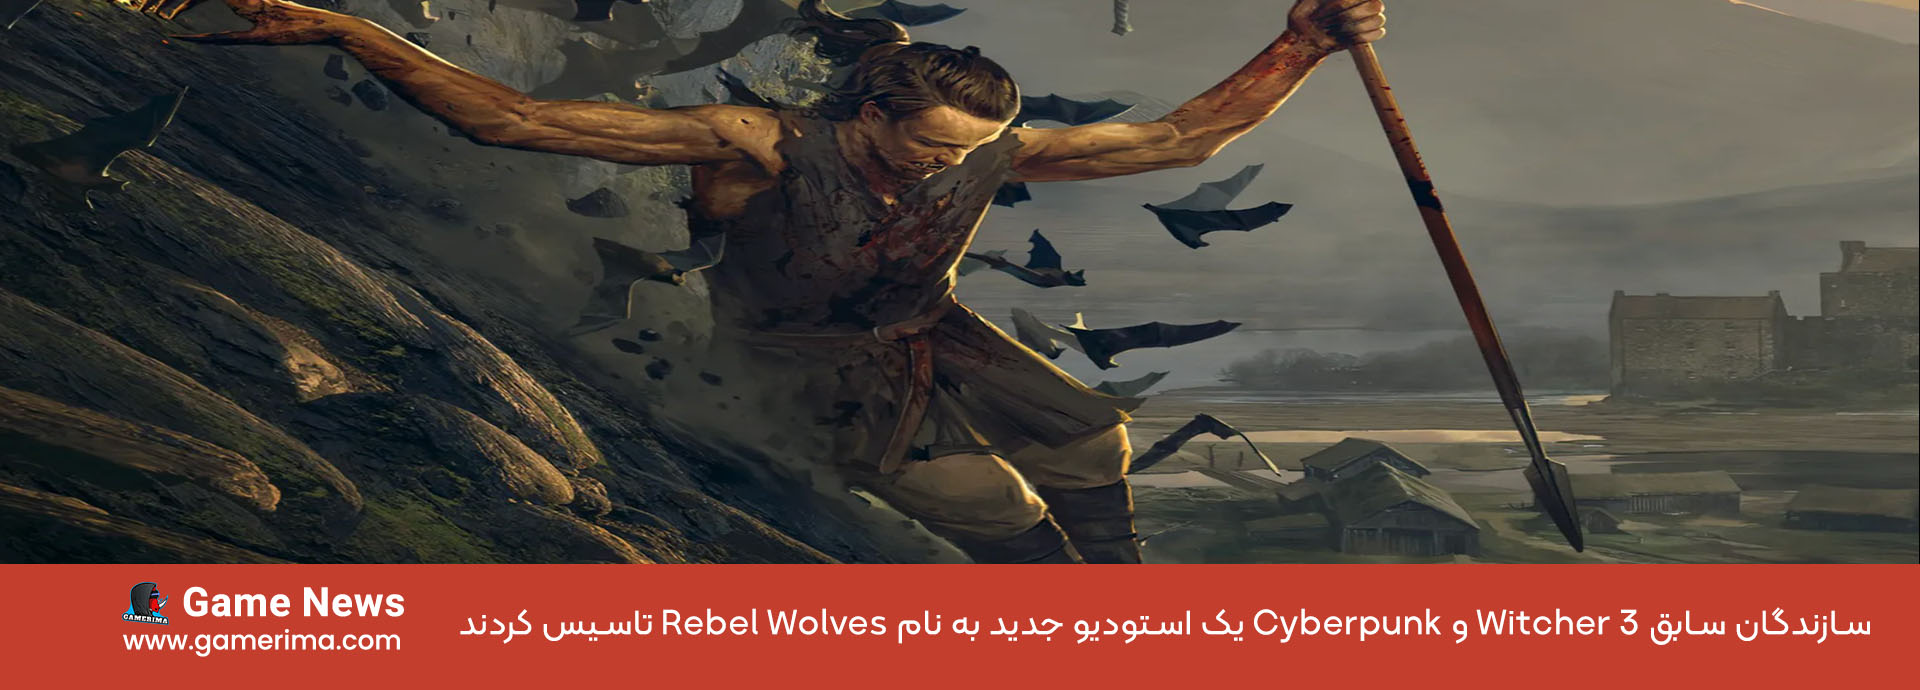 سازندگان سابق Witcher 3 و Cyberpunk یک استودیو جدید به نام Rebel Wolves تاسیس کردند